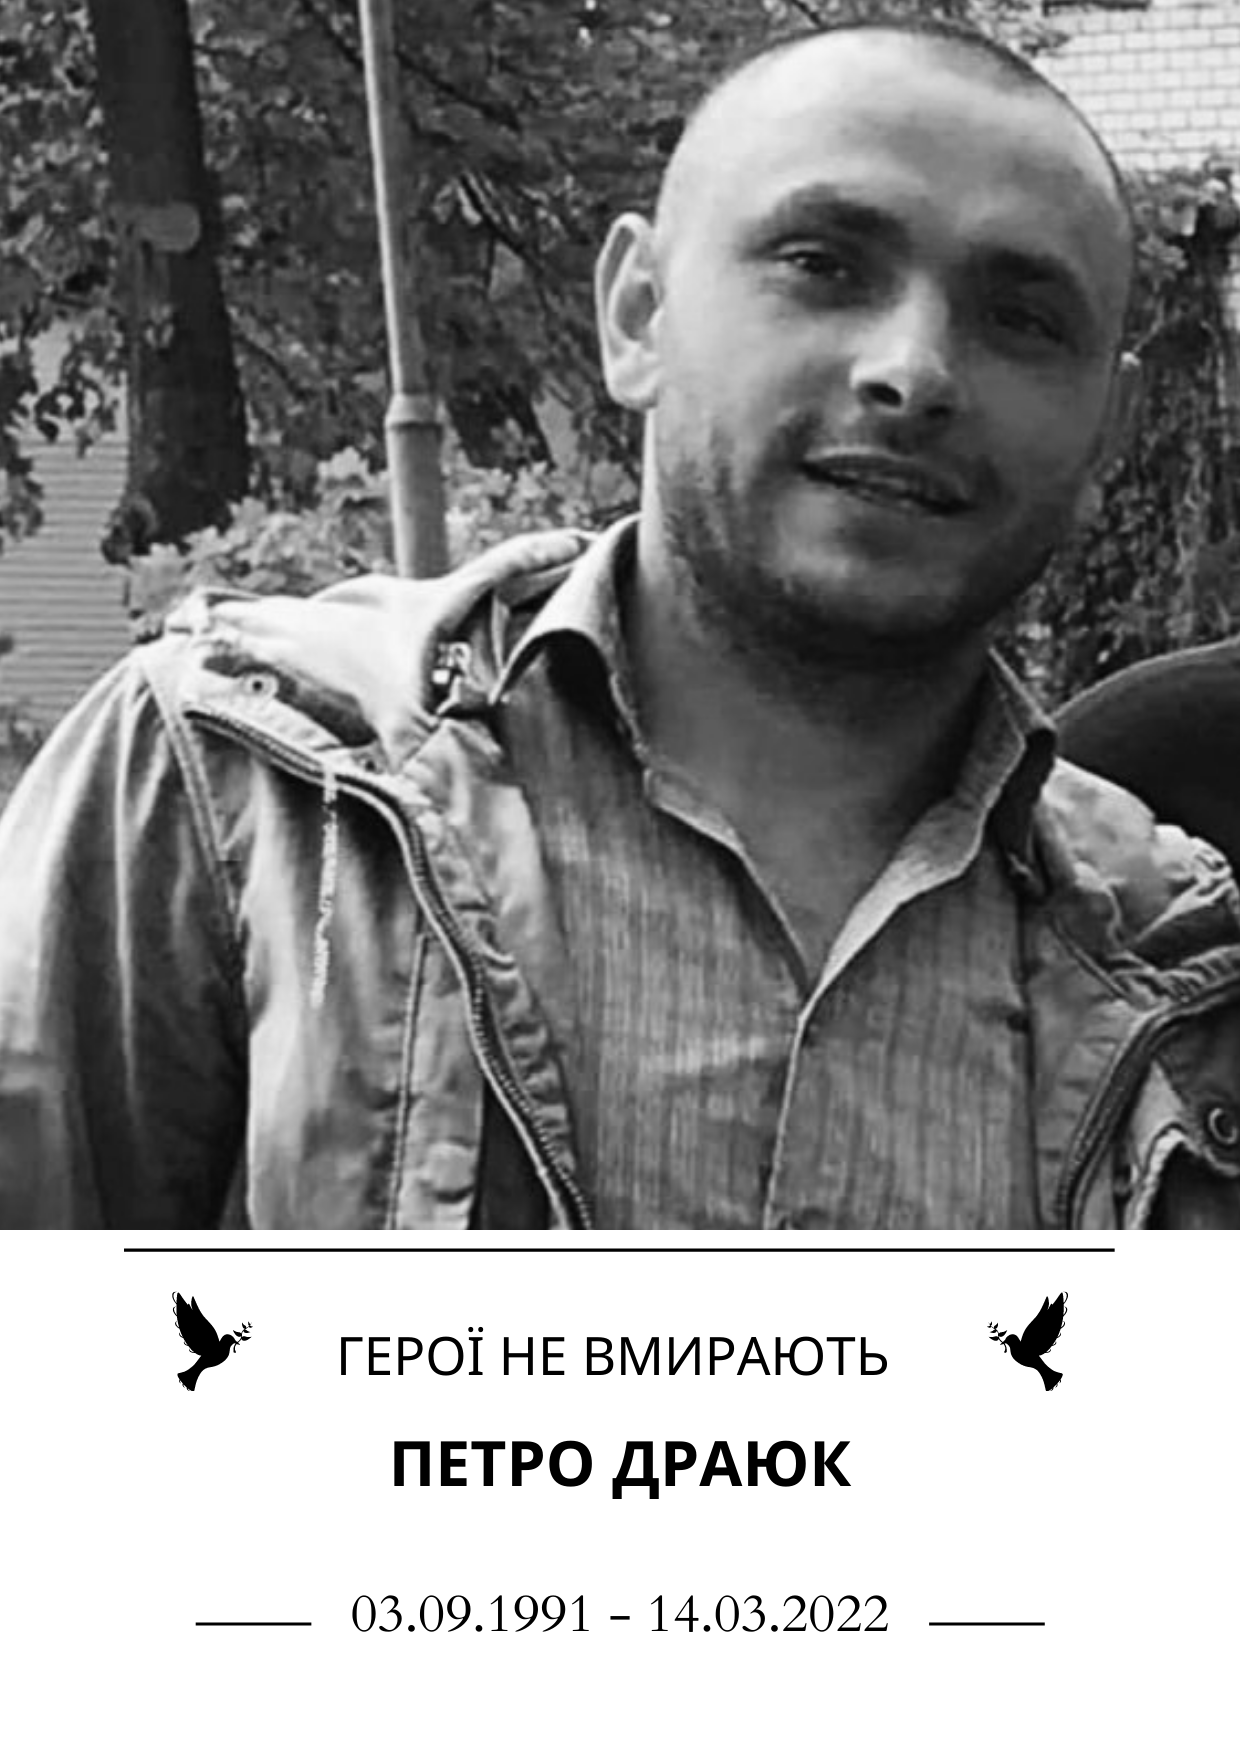 Герої не вмирають Петро Драюк Роки життя 3 вересня 1991 року - 14 березня 2022 року